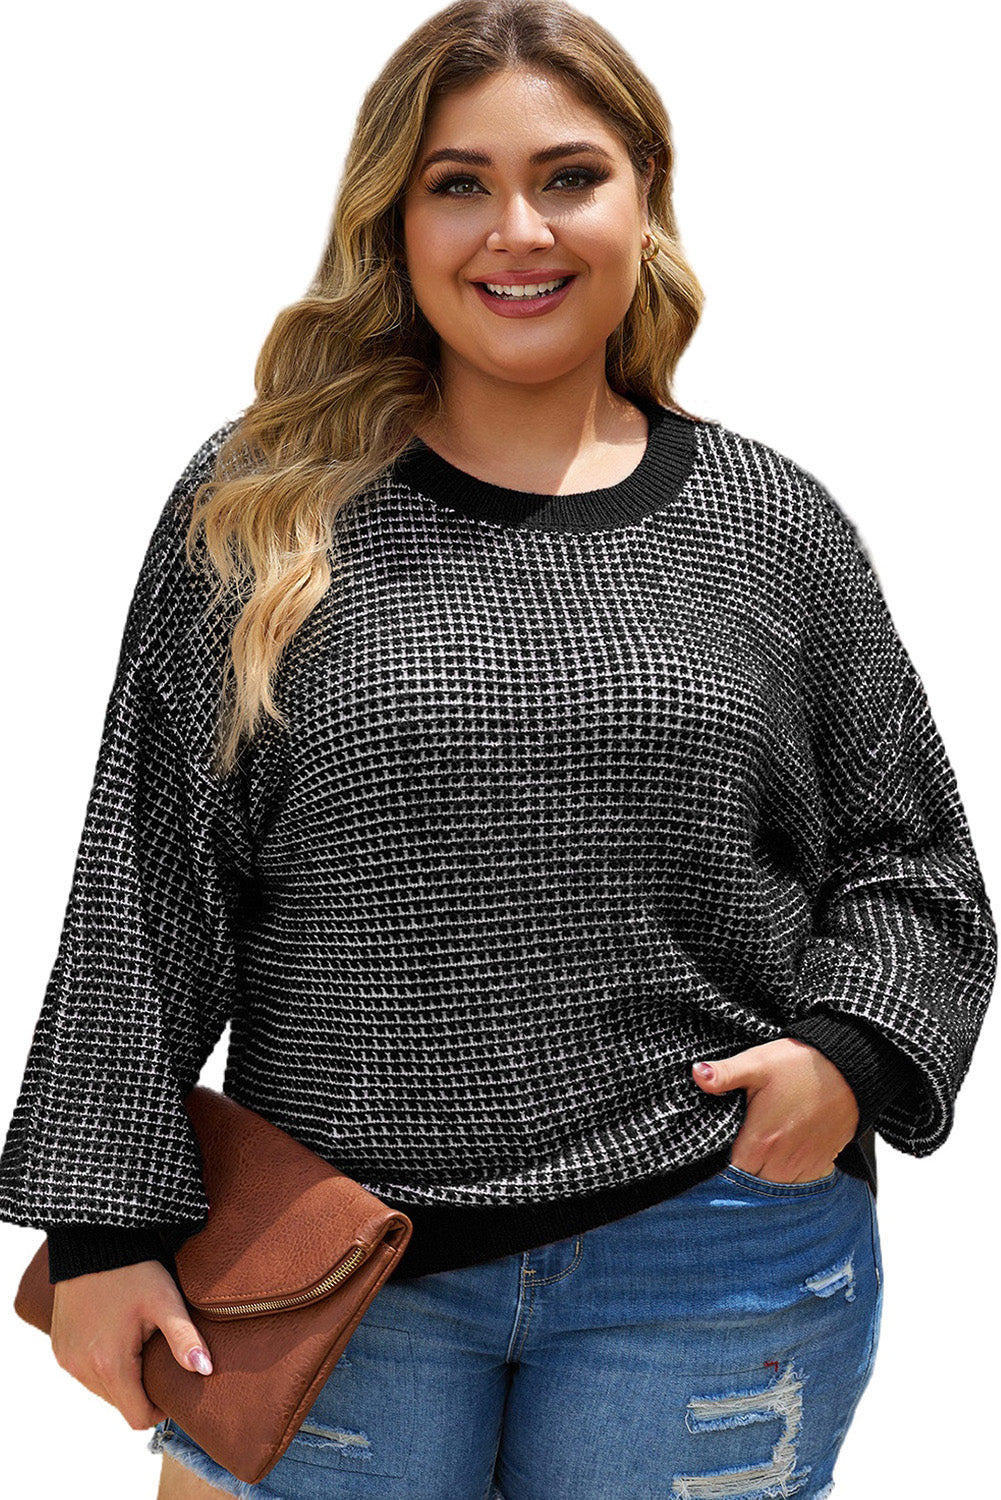 Crni pleteni pulover veličine s vrijeskom na spuštena ramena